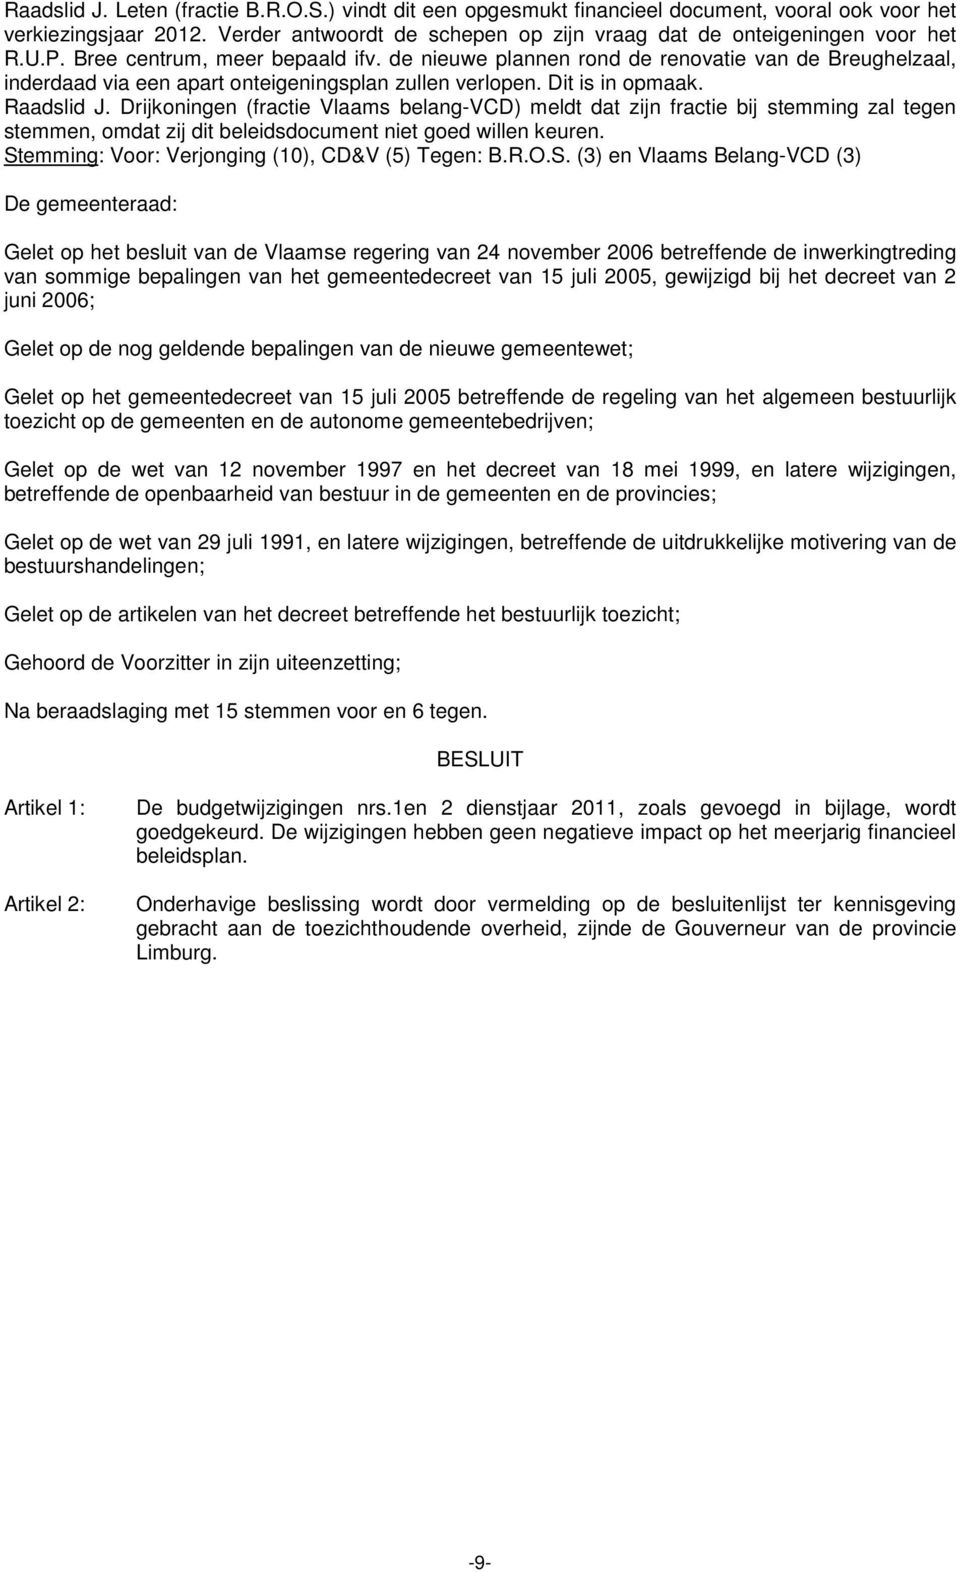 Drijkoningen (fractie Vlaams belang-vcd) meldt dat zijn fractie bij stemming zal tegen stemmen, omdat zij dit beleidsdocument niet goed willen keuren.